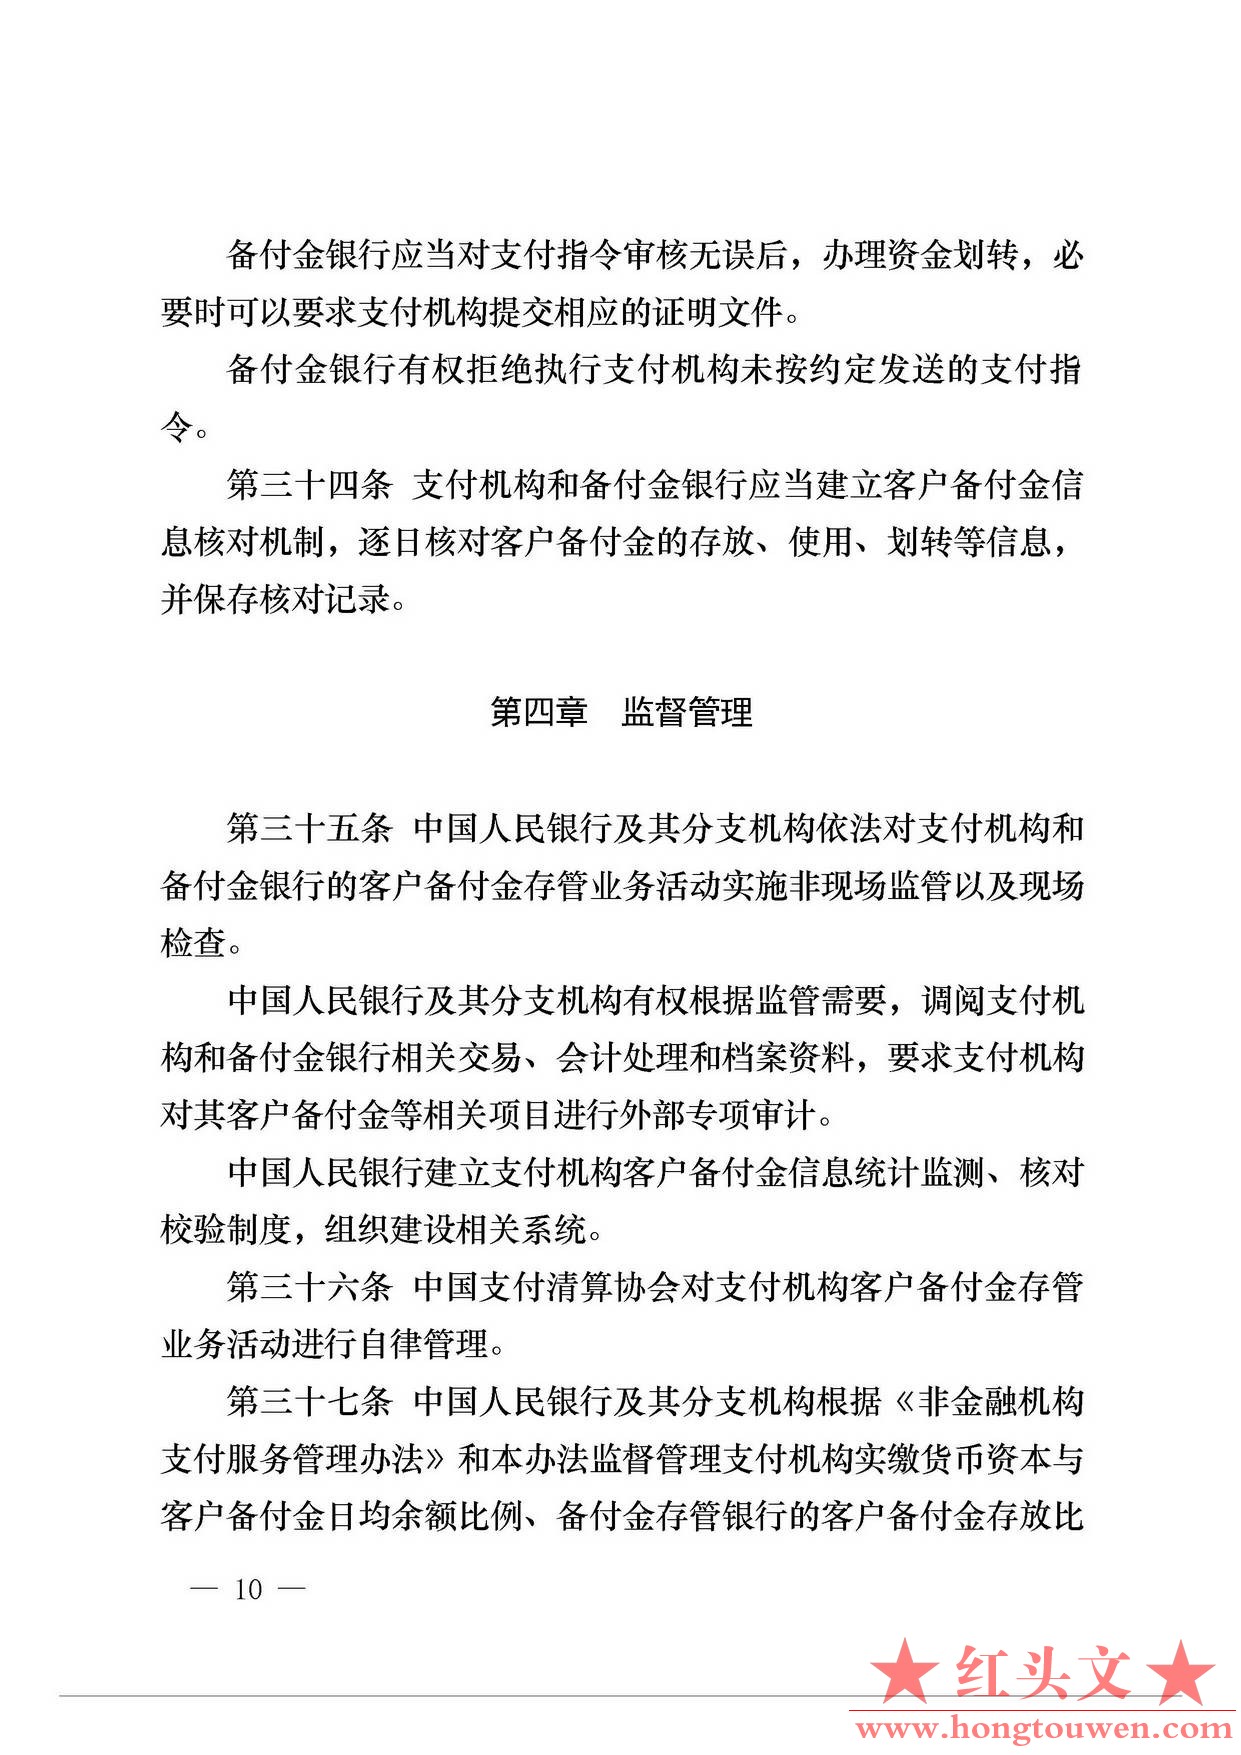 中国人民银行公告[2013]6号-《支付机构客户备付金存管办法》_页面_10.jpg.jpg